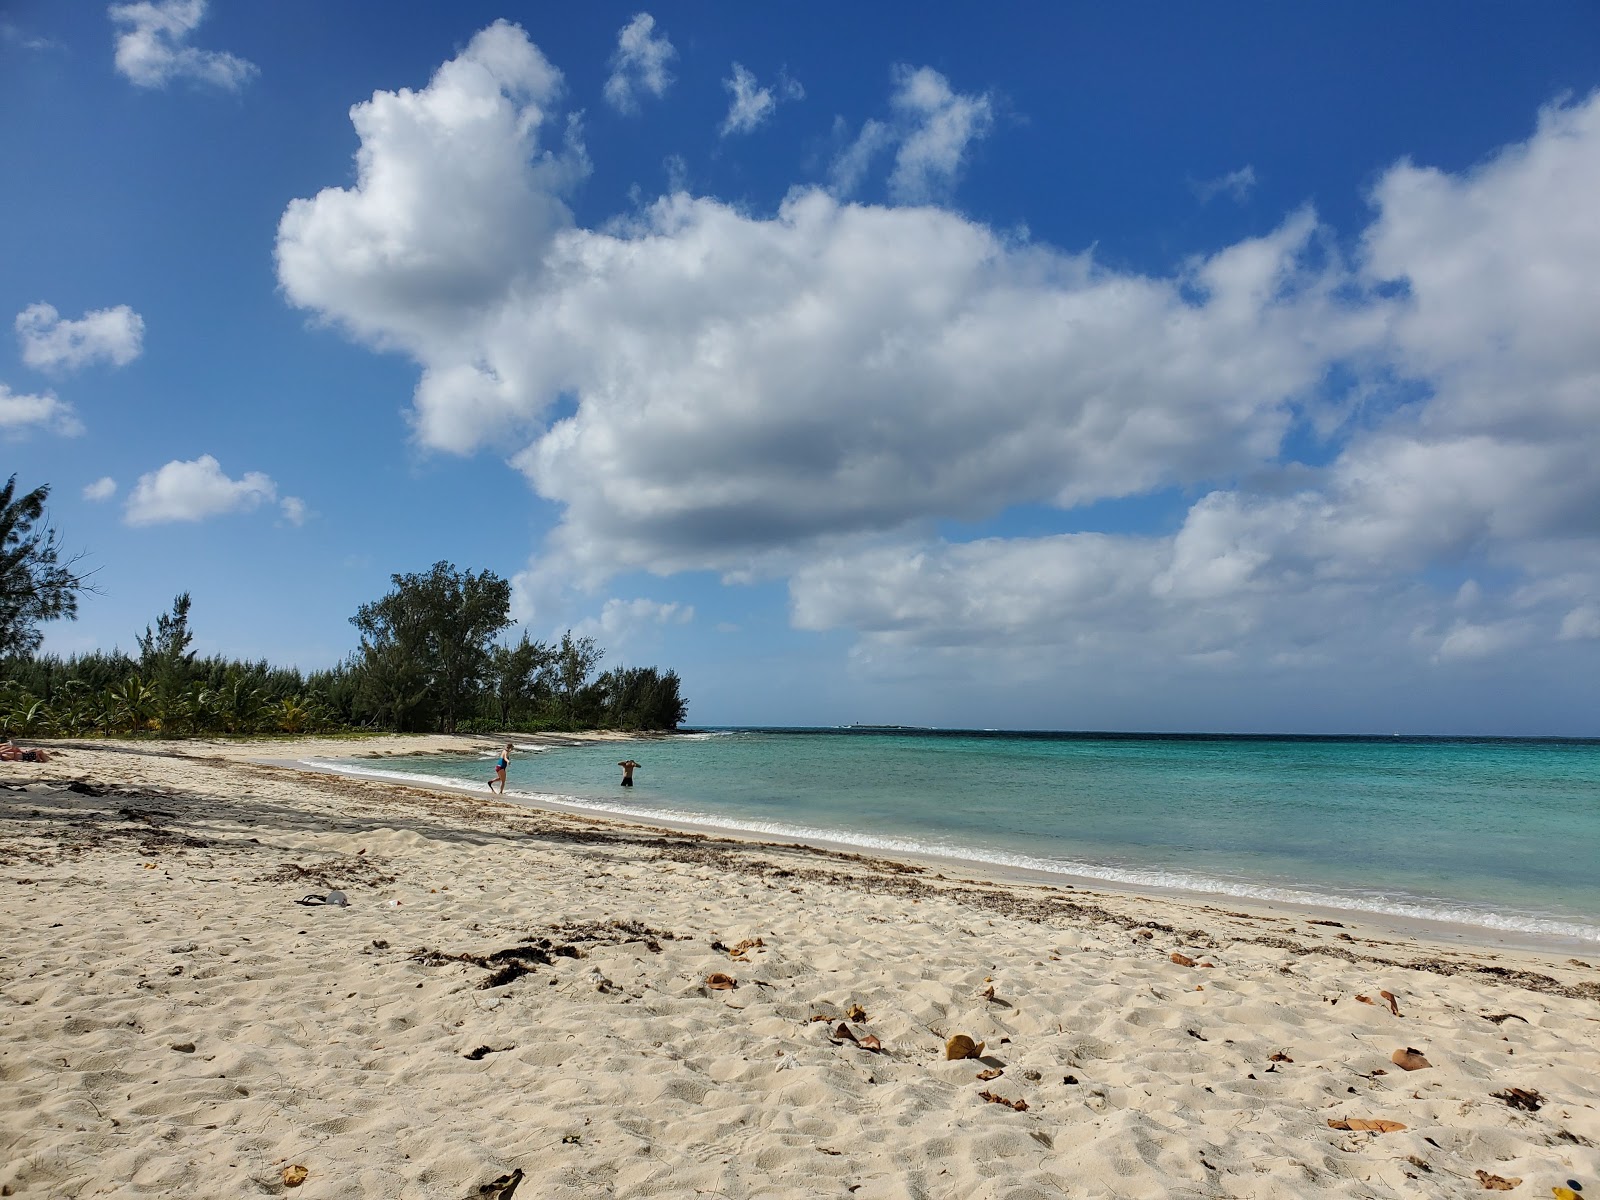 Foto de Jaw's beach - lugar popular entre os apreciadores de relaxamento